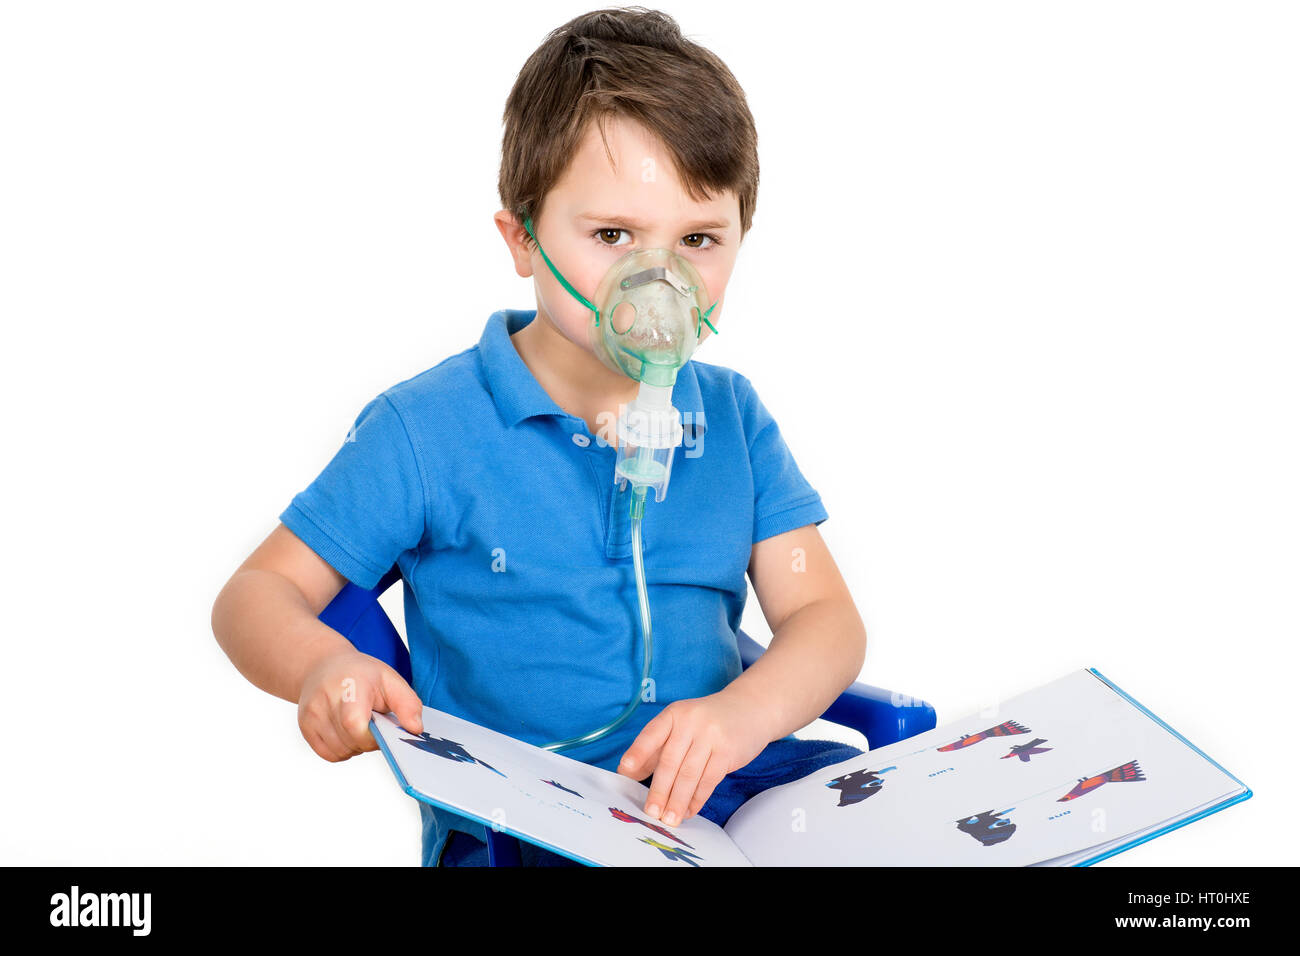 Asthmatischer junge Gesichtsmaske aus Vernebler Inhalator Maschine tragen. Isoliert auf weißem Hintergrund. Stockfoto